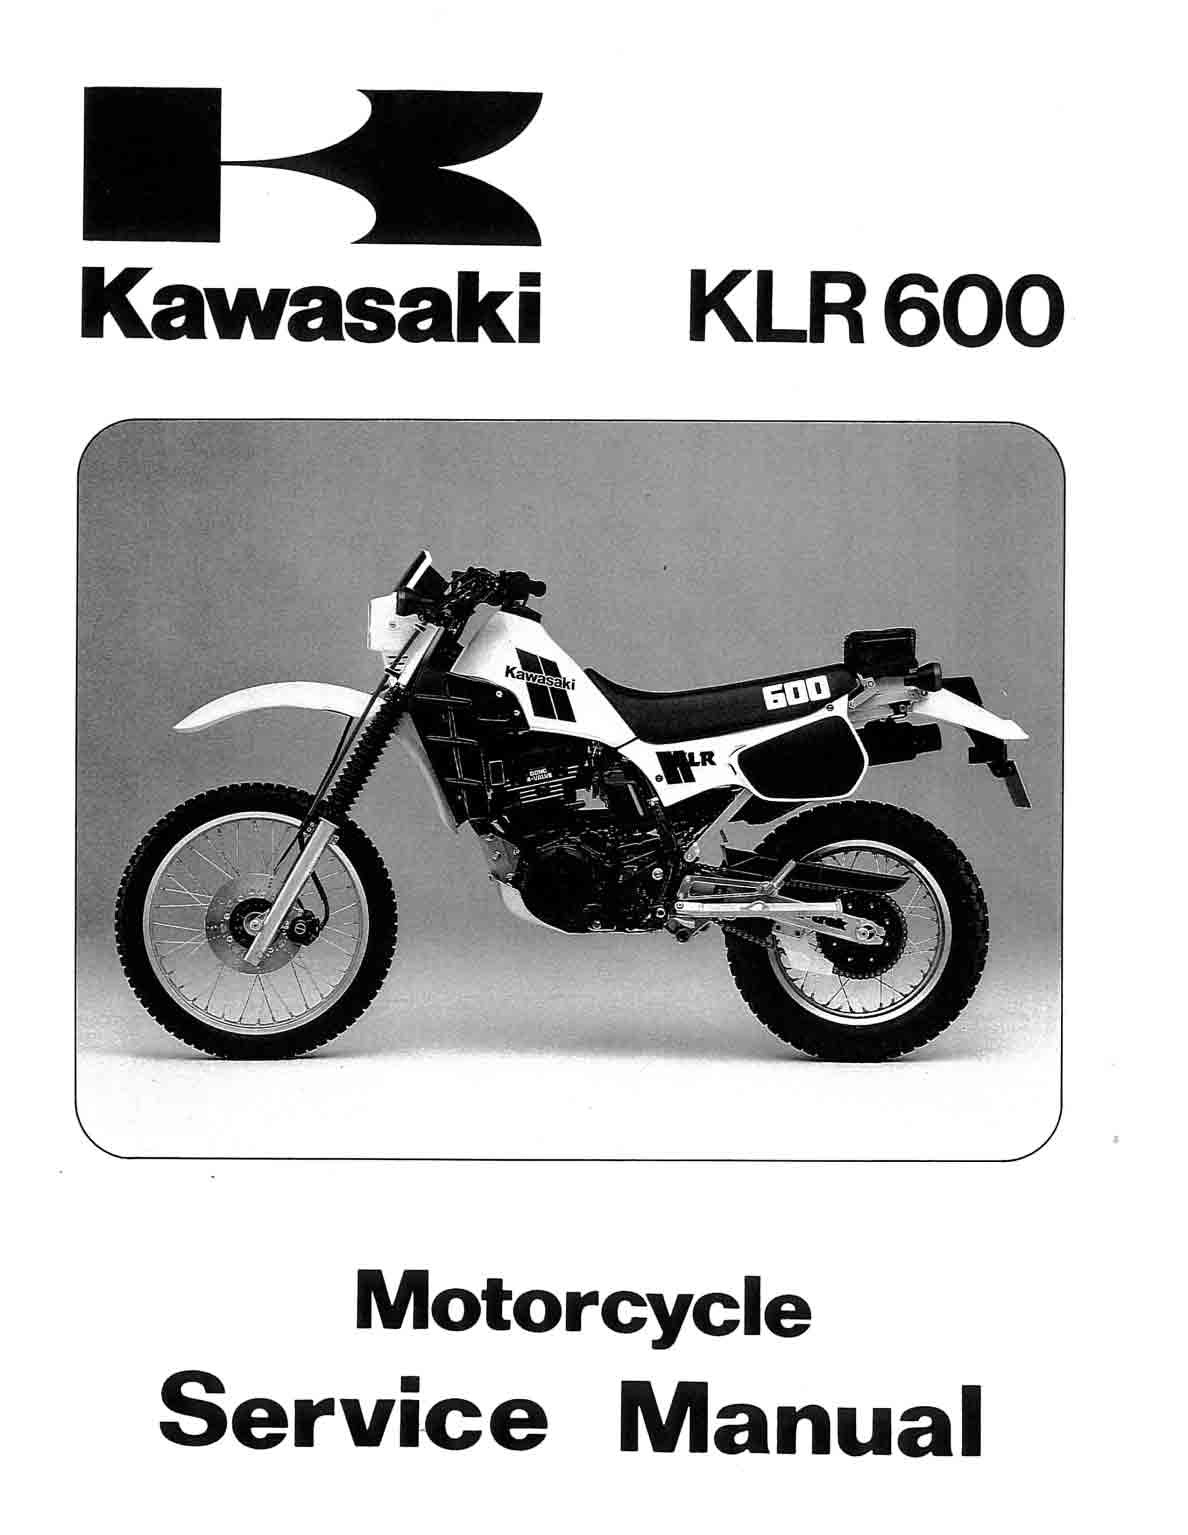 kawasaki klr 650 manual free